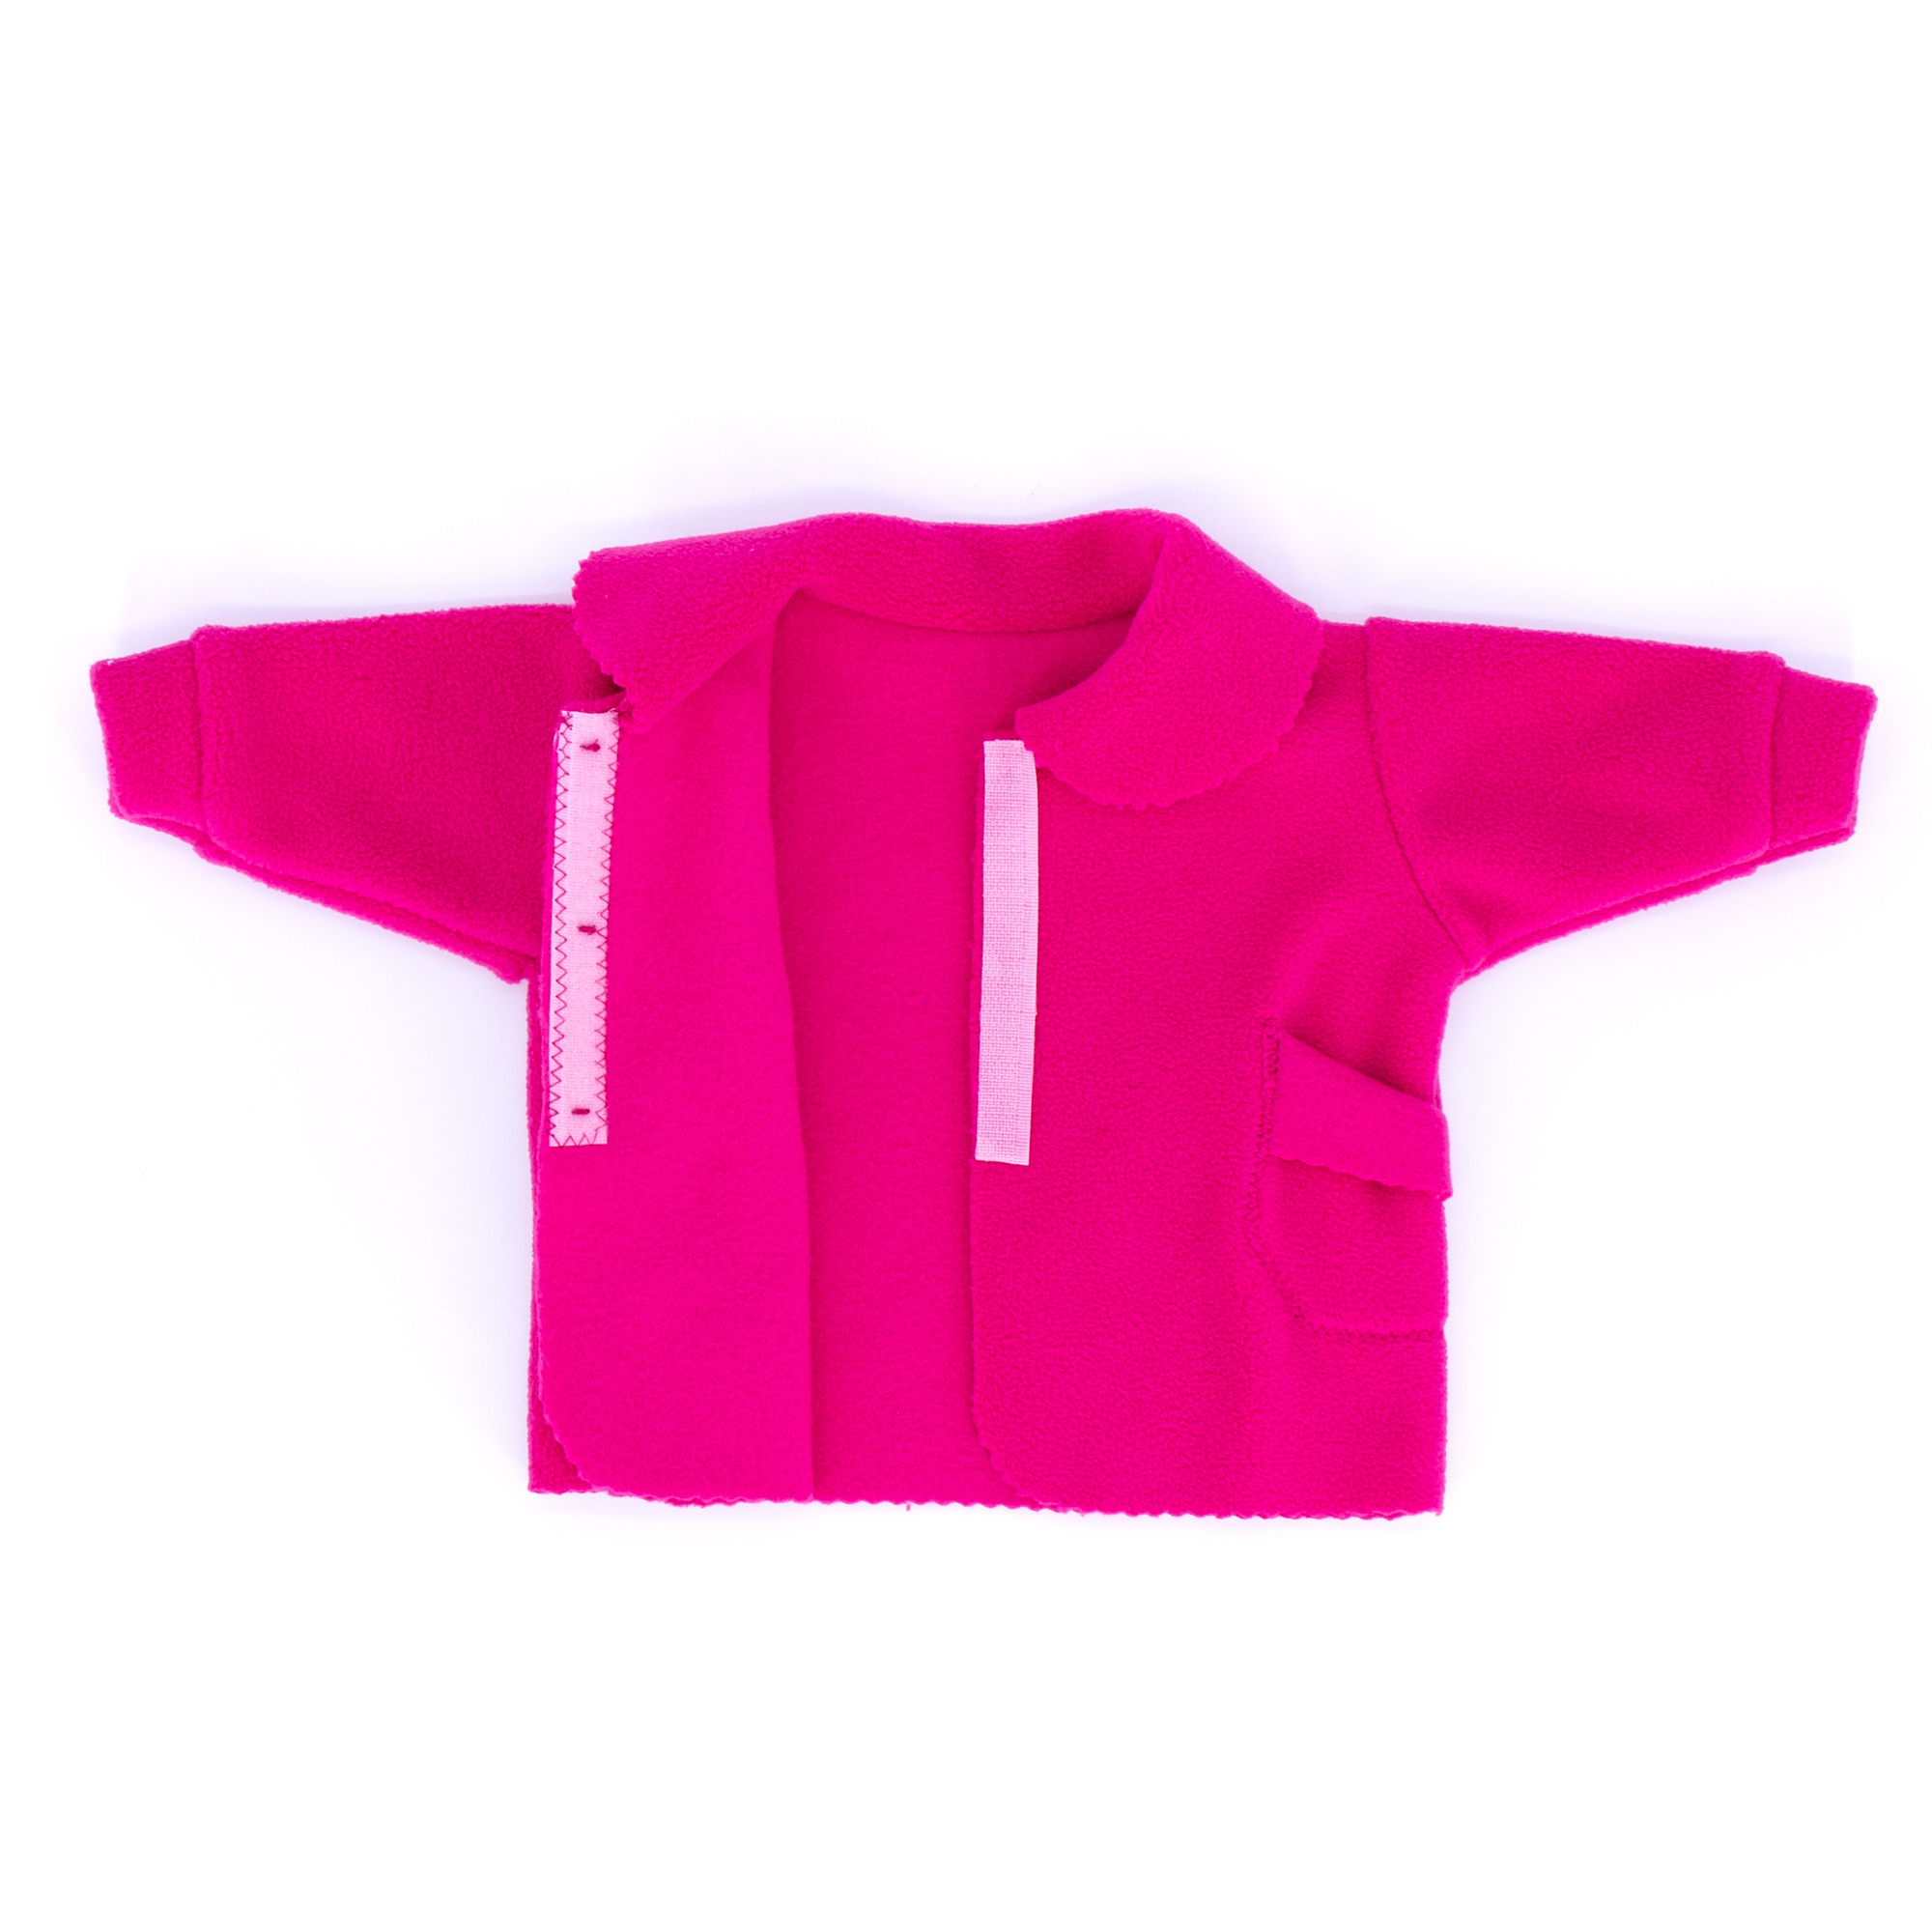 Комплект одежды Модница Пальто с беретом для пупса 43-48 см фуксия 6119фуксия - фото 7